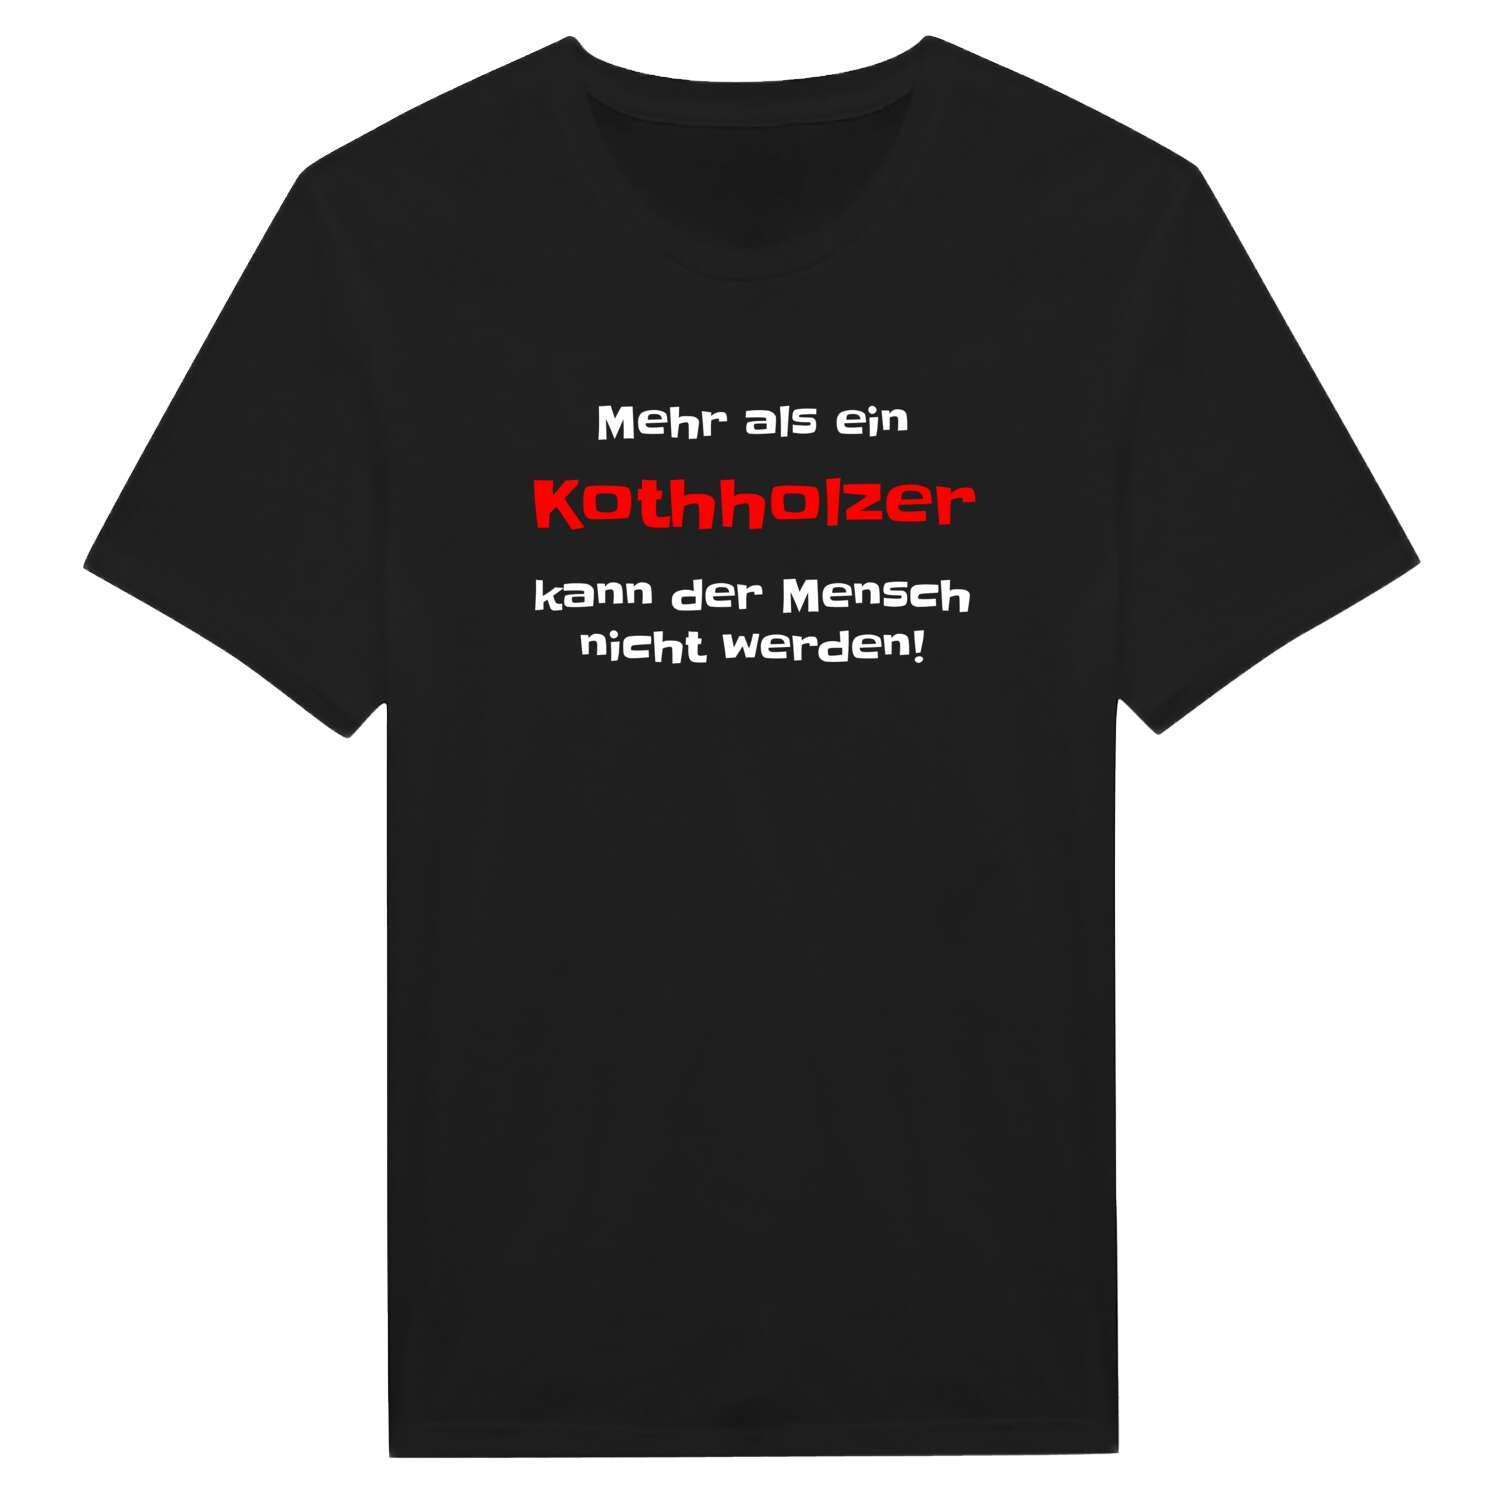 Kothholz T-Shirt »Mehr als ein«